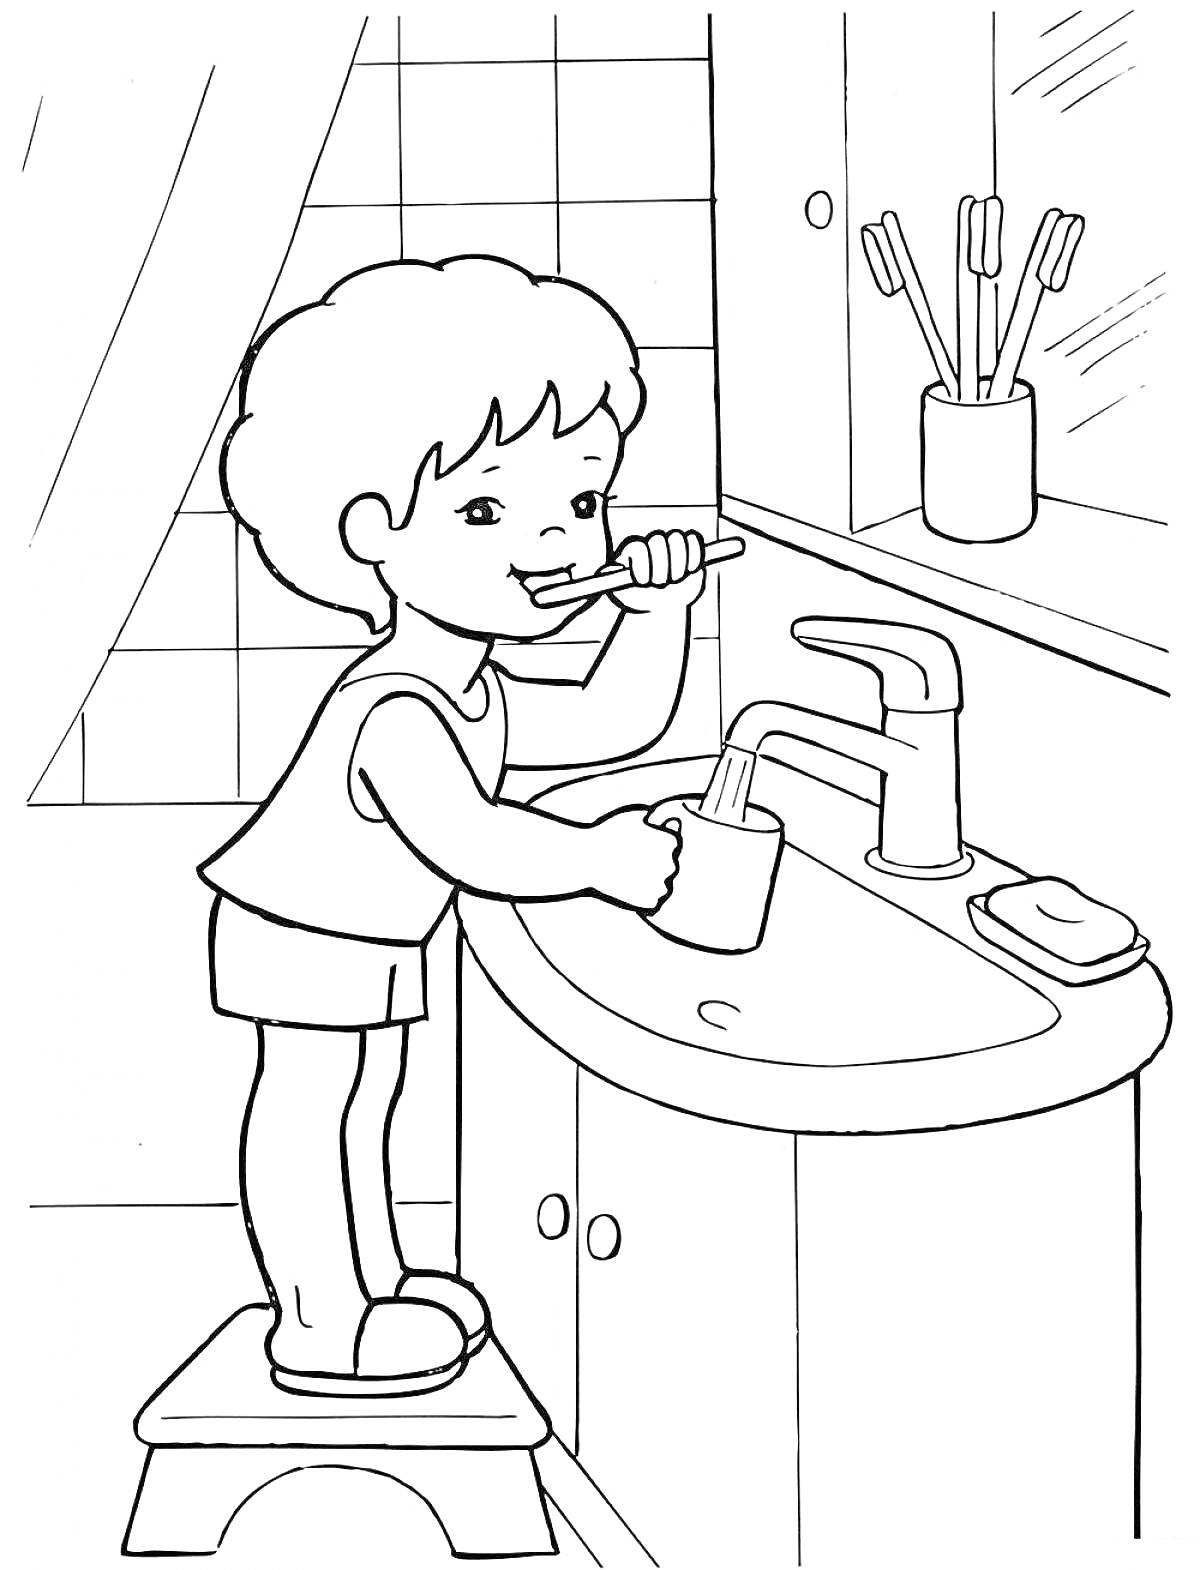 Ребёнок чистит зубы возле раковины с кранами и зубными щетками